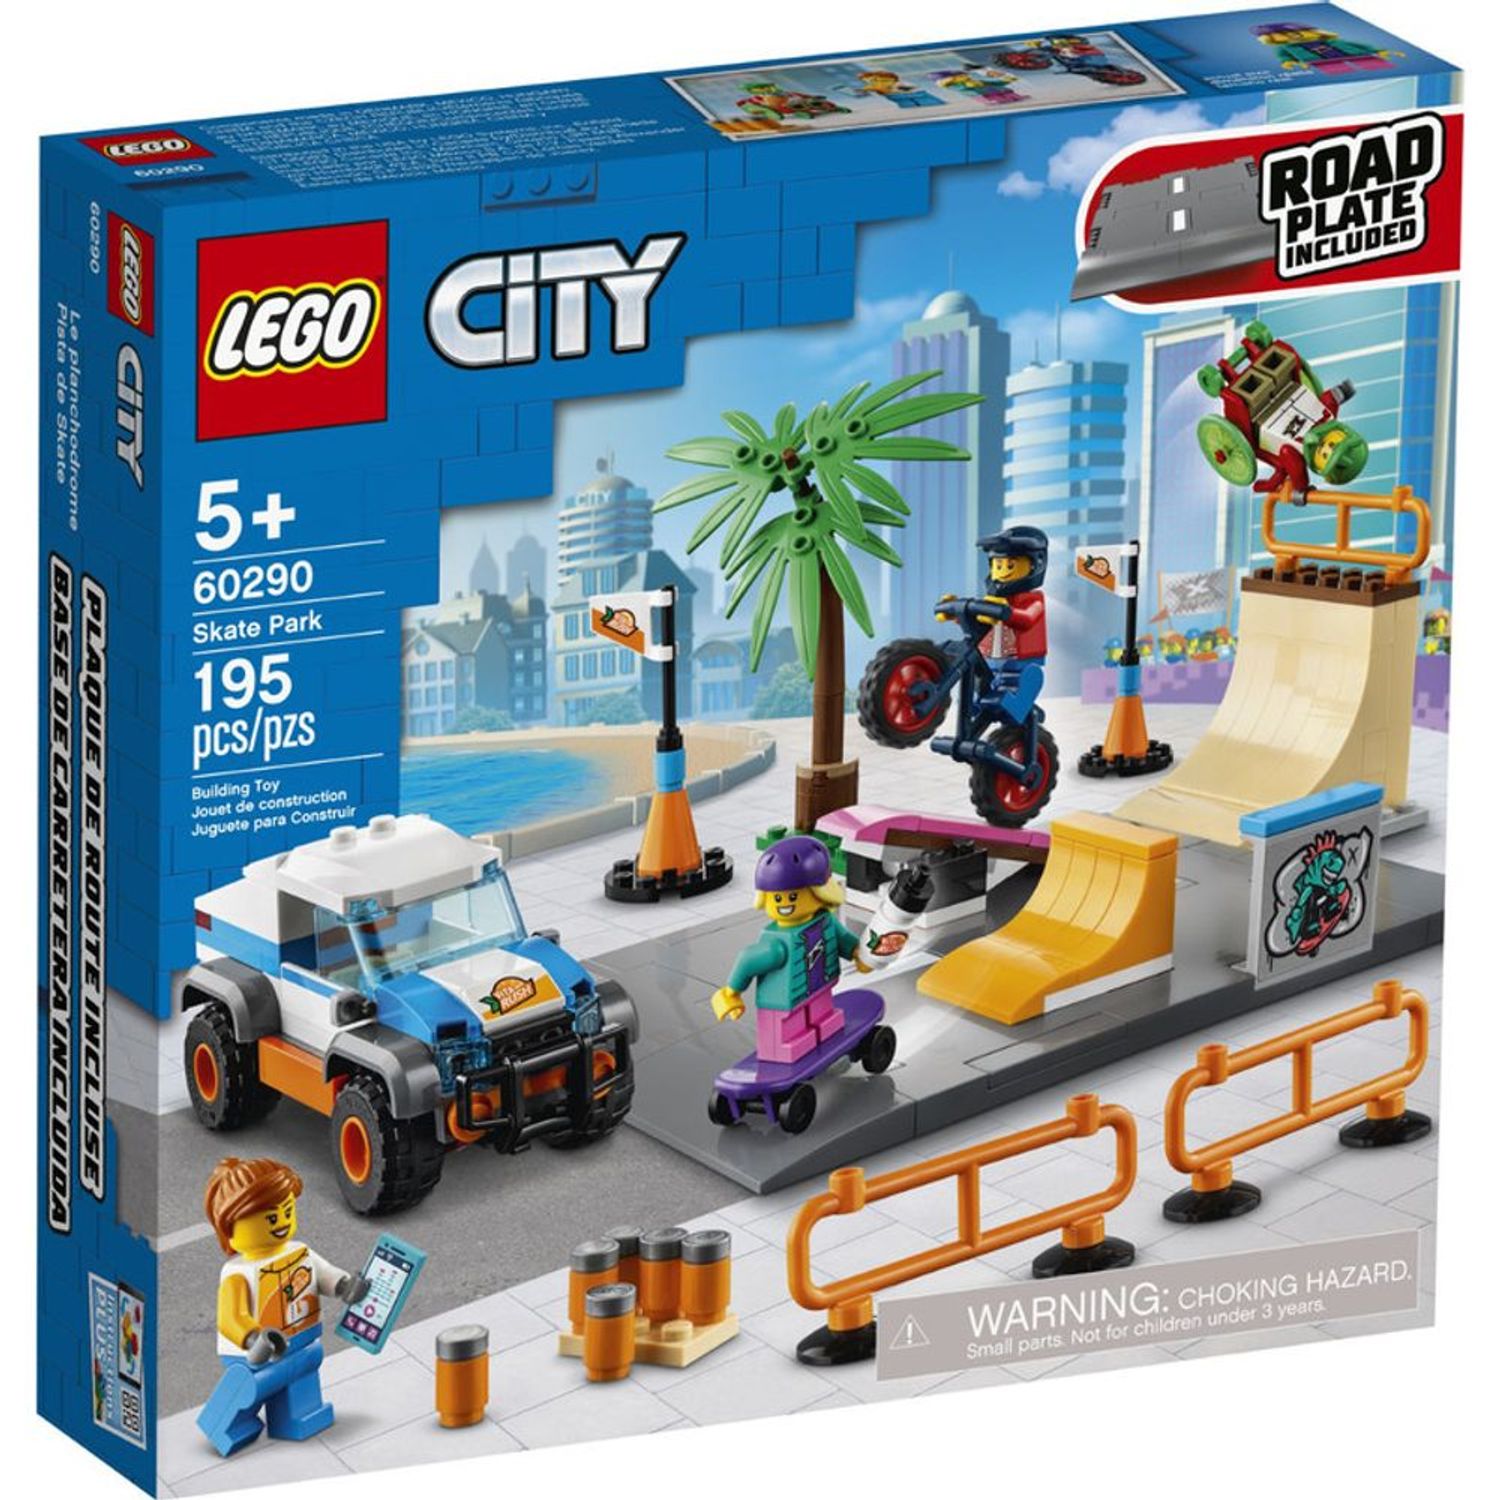 Lego 30 Nuevo Lego Minifigures Ciudad City Serie Ciudad niño niña conjunto de personas